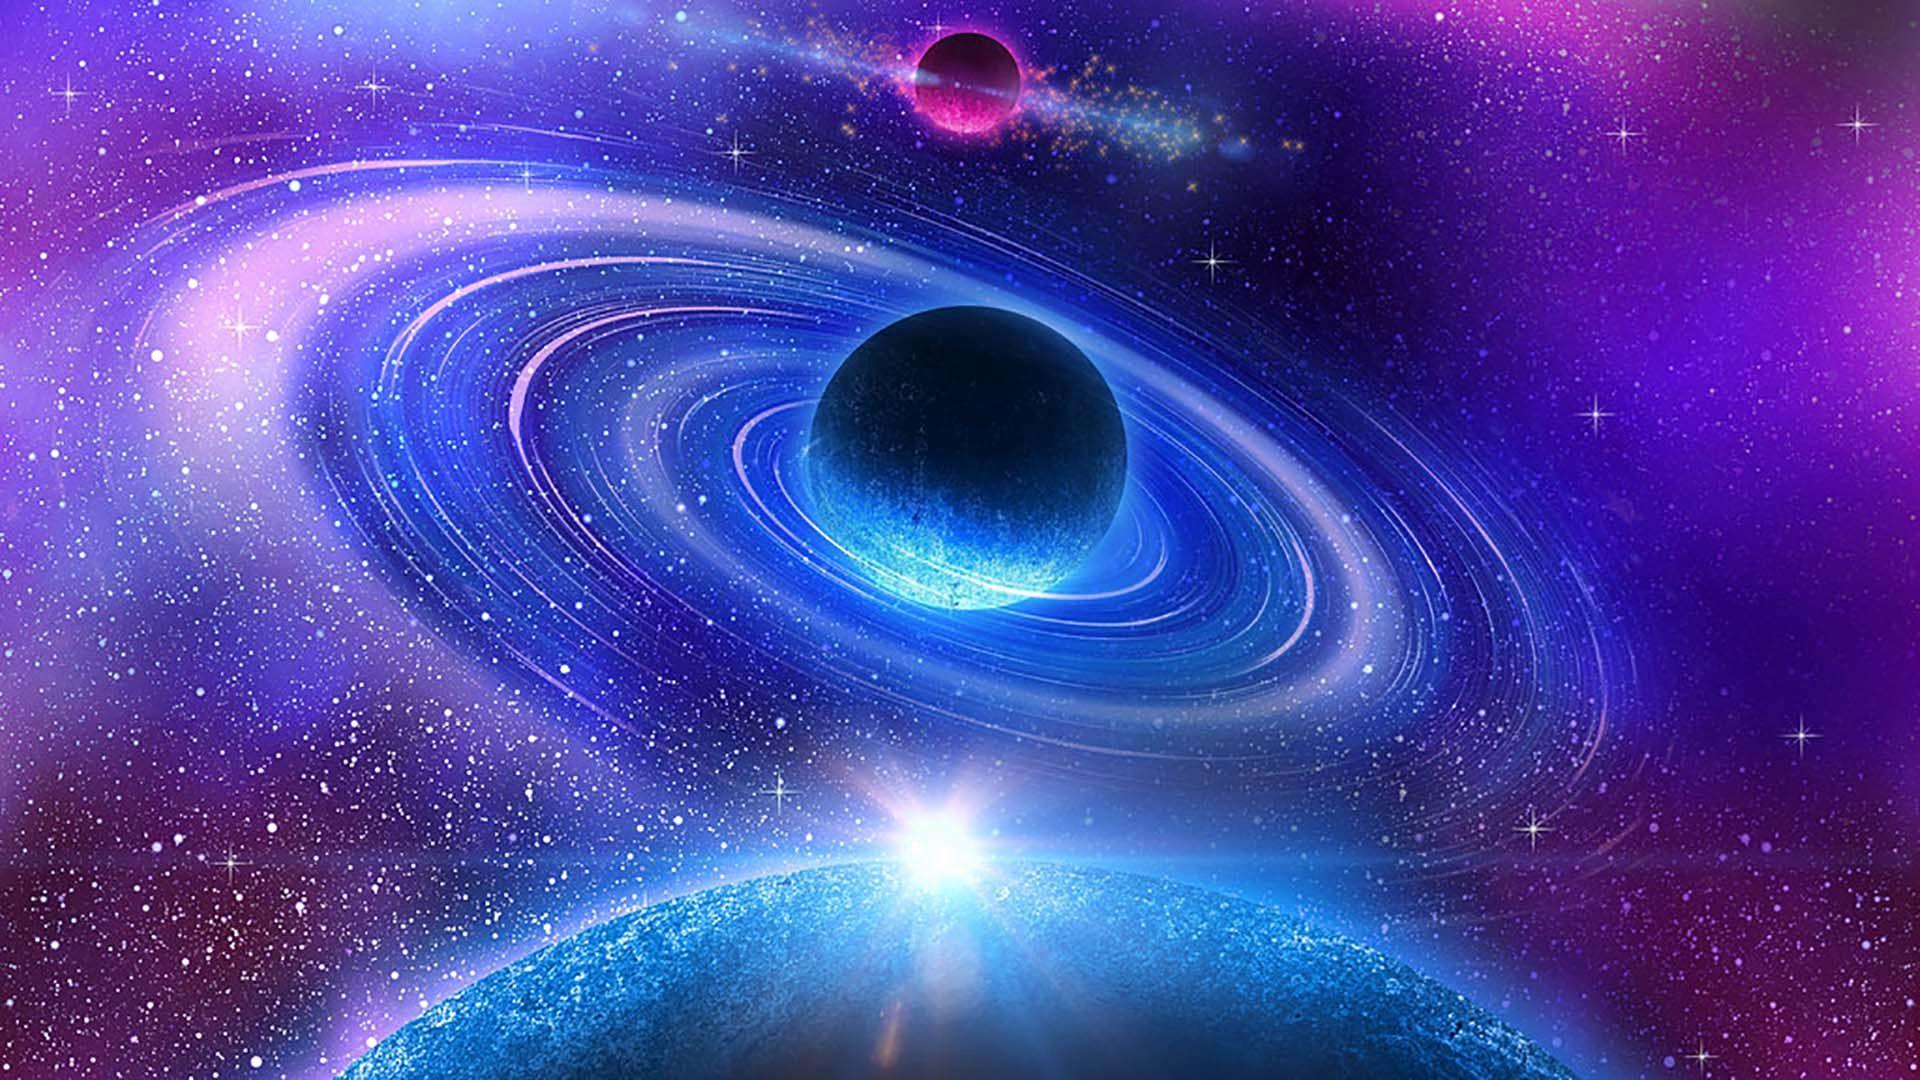 Cool Galaxy Wallpapers - Top Những Hình Ảnh Đẹp